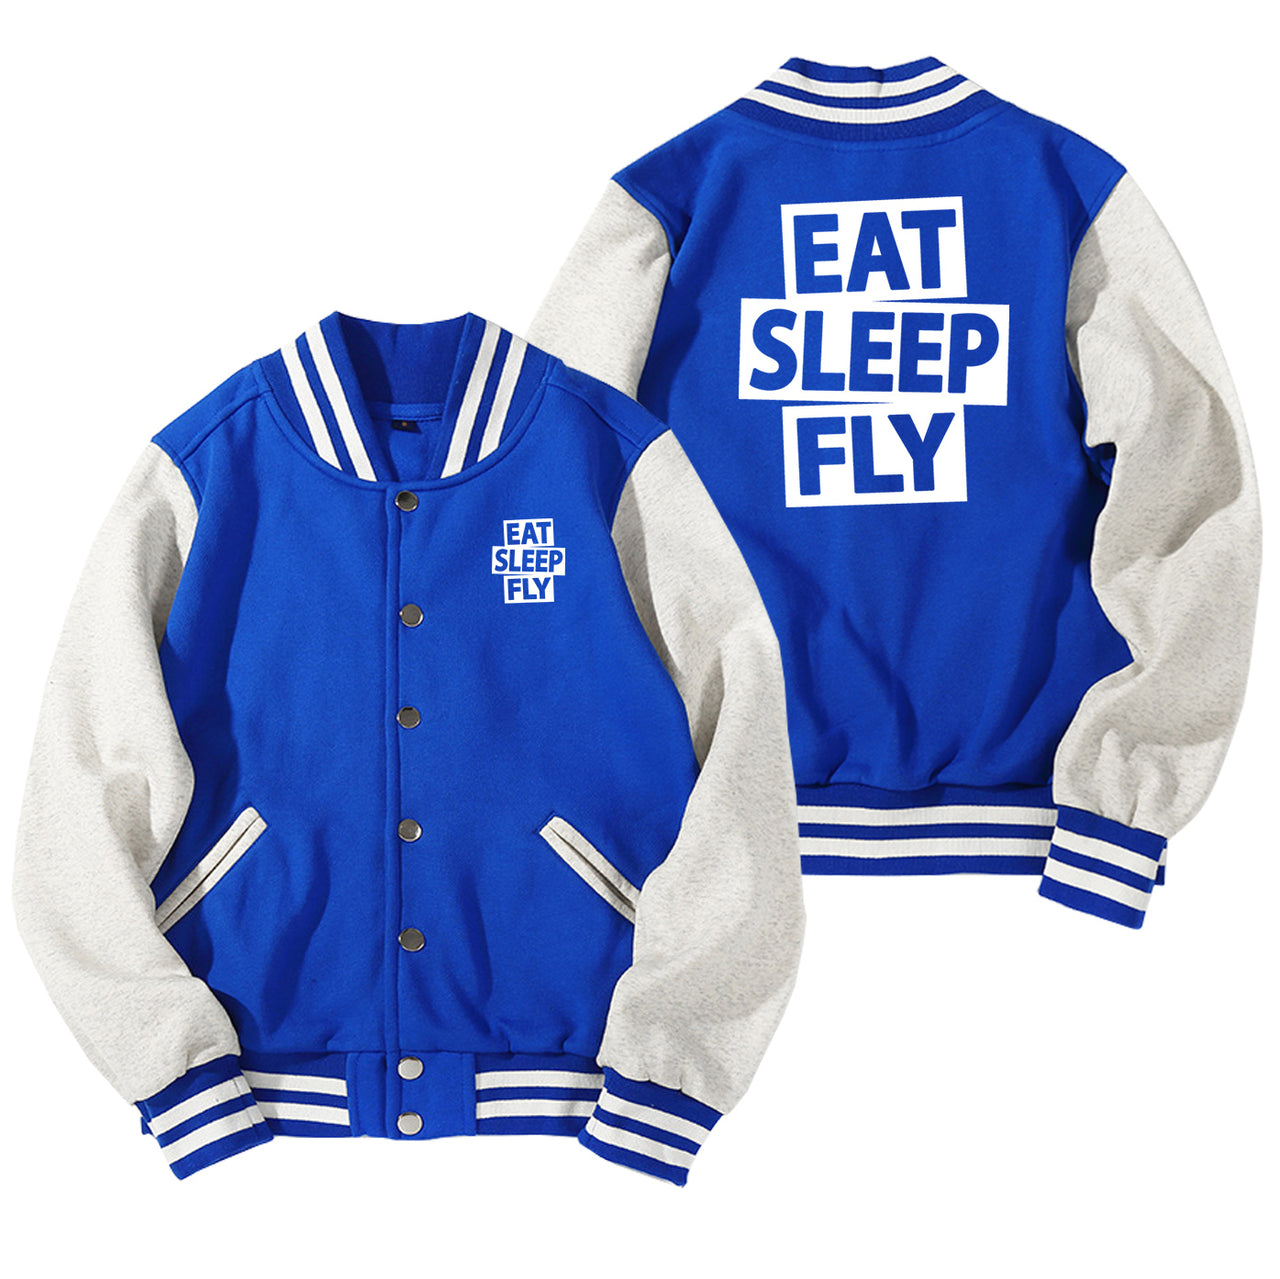 Eat Sleep Fly Designed Baseball Style Jackets